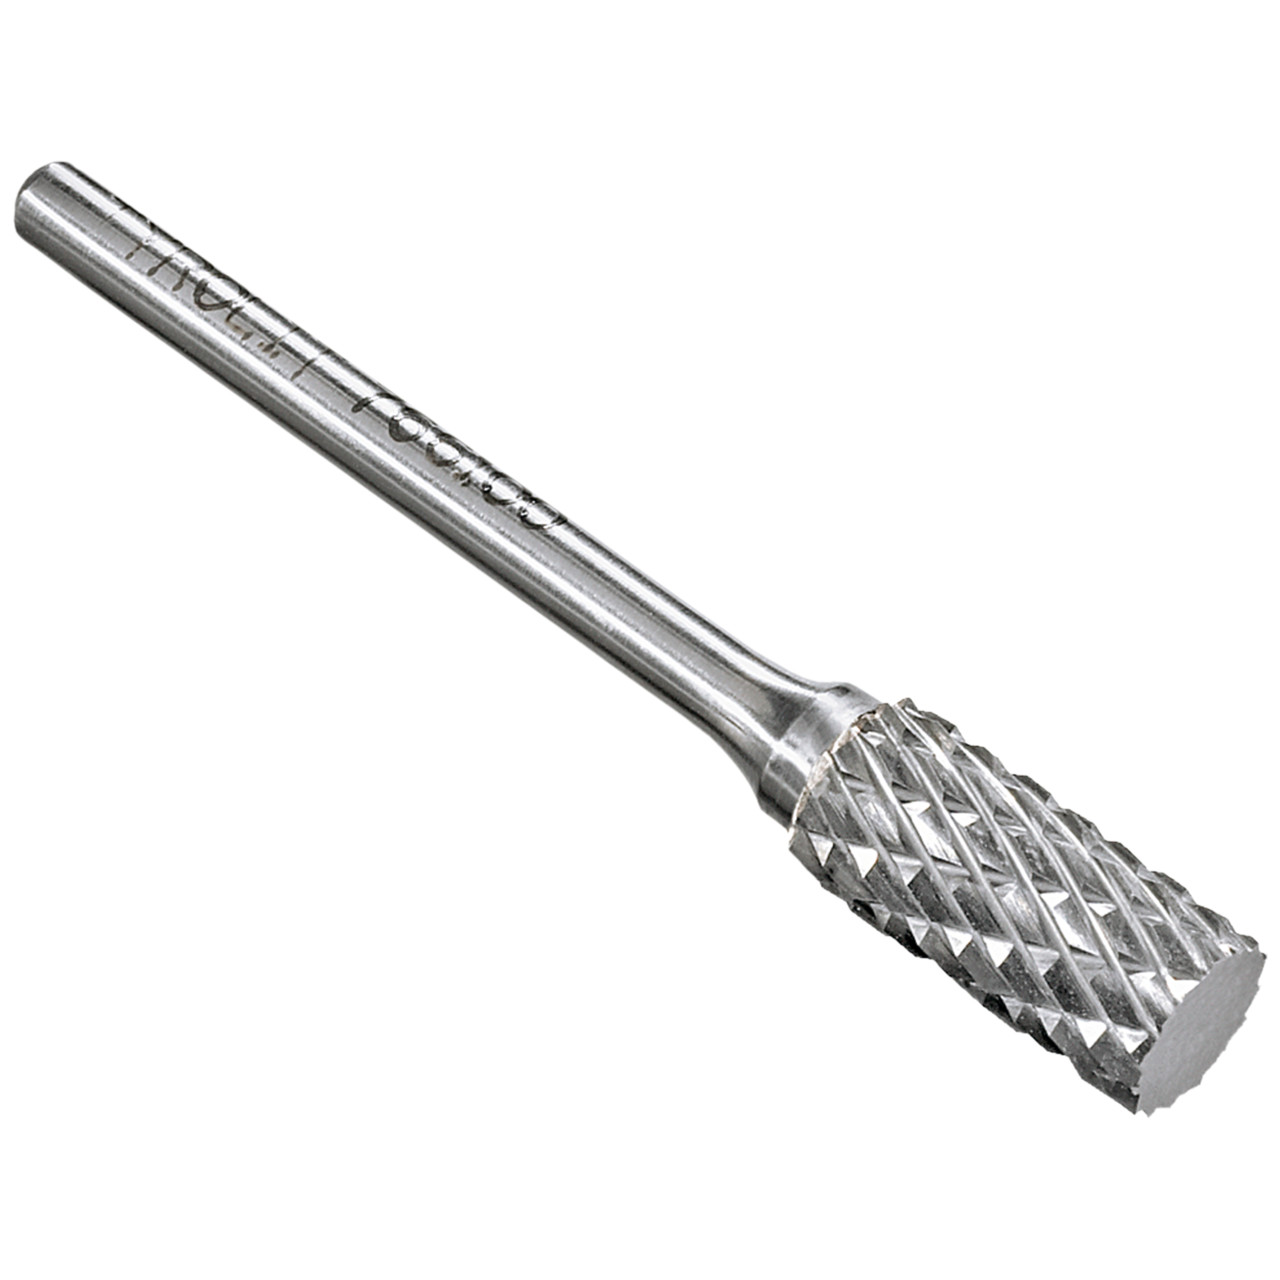 TYROLIT hardmetalen frees DxT-SxL 10x19-6x65 Voor gietijzer, staal en roestvrij staal, vorm: 52ZYA - cilinder, Art. 766108